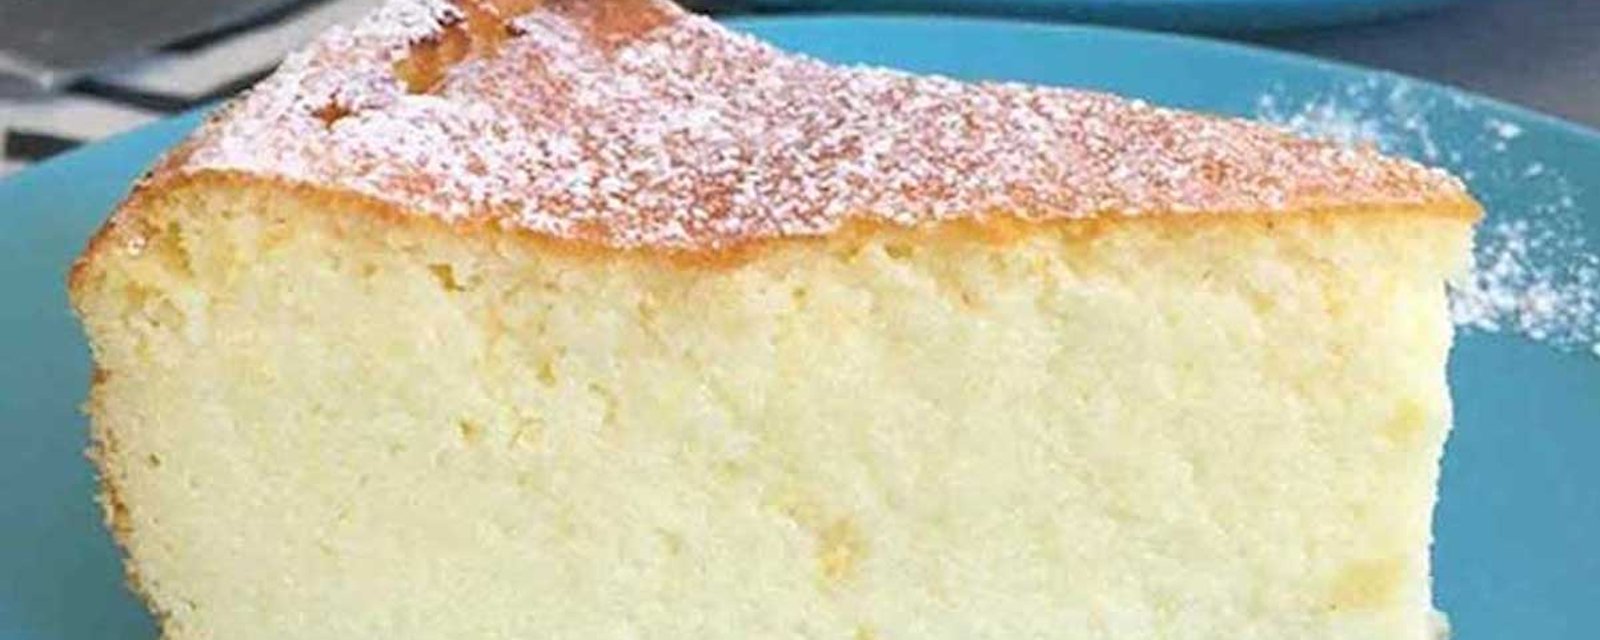 Léger comme un nuage: le gâteau italien